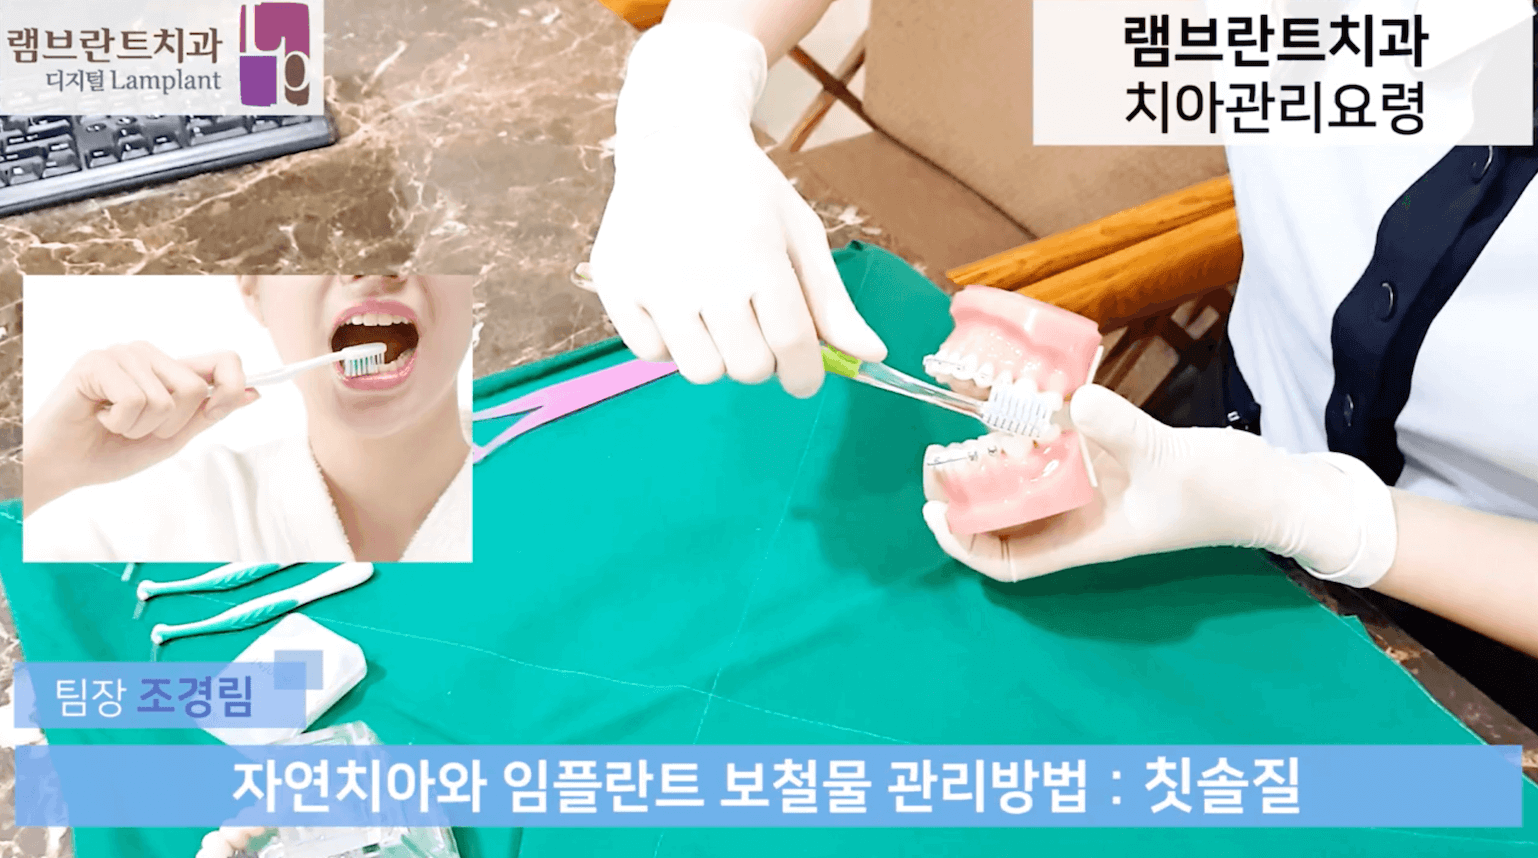 [대전치과,대전충치치료] 치아관리 요령에 대해 알아보기, 권주홍 대표원장